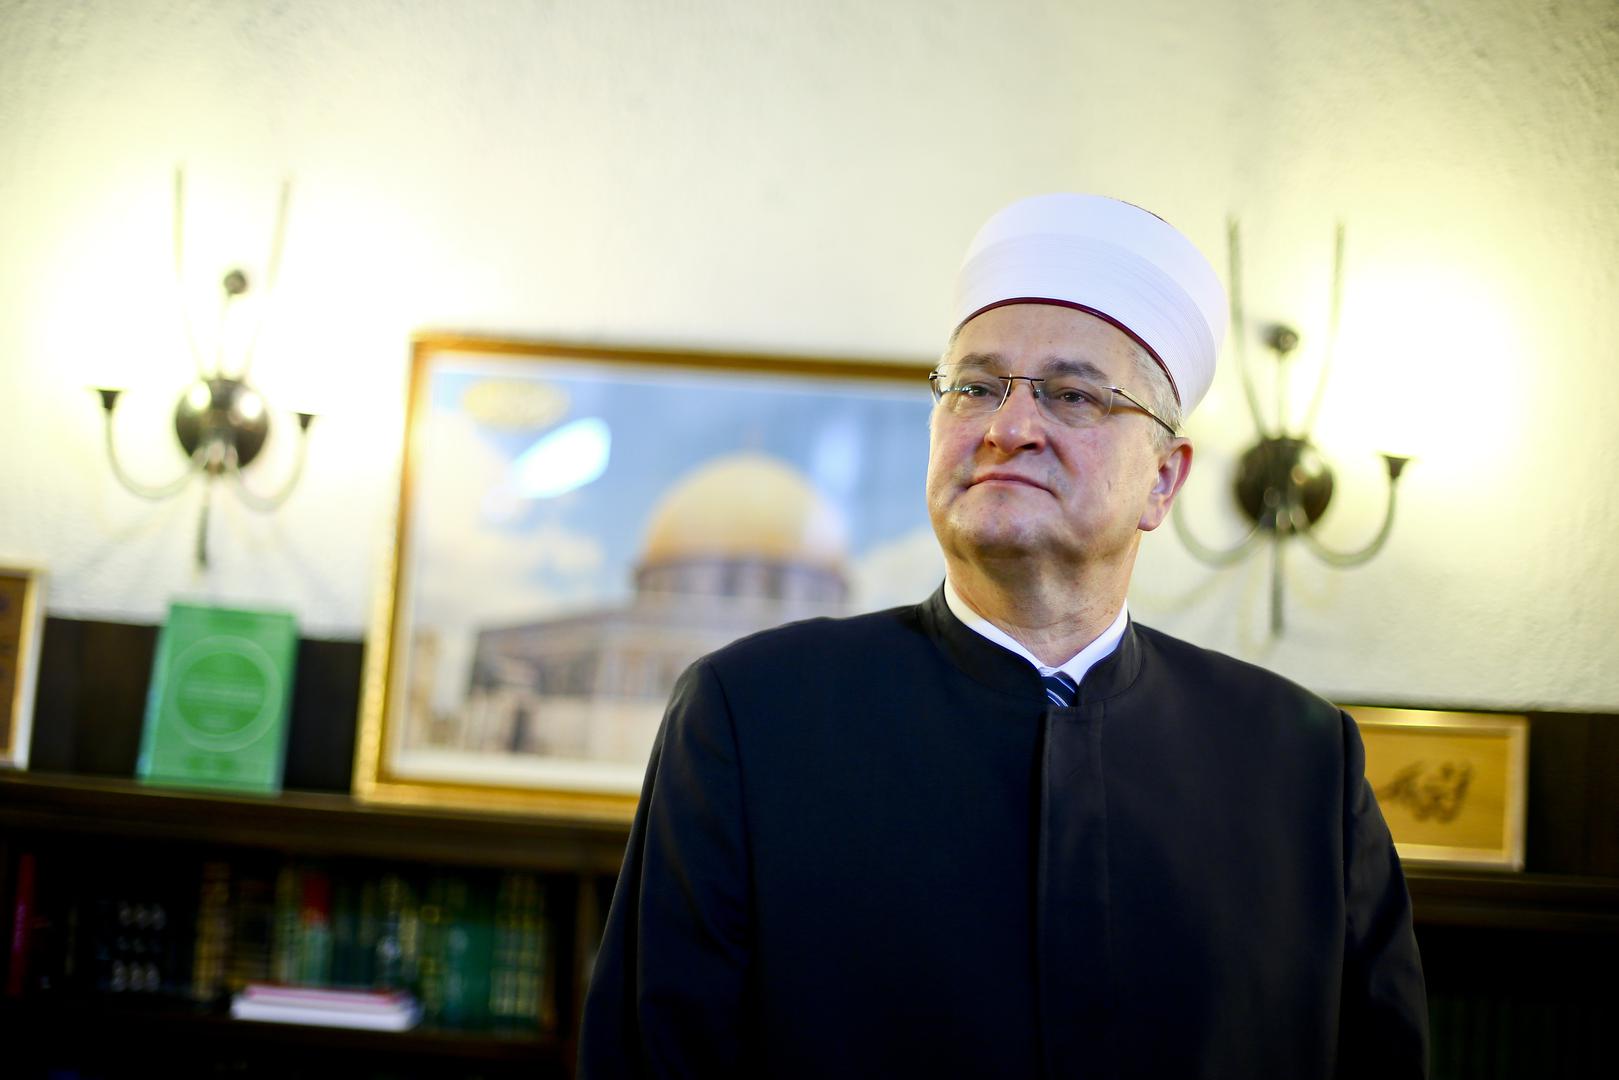 Religija neće biti problem nikome dokle godi služi za promicanje univerzalnog dobra, kaže dr. Aziz ef. Hasanović